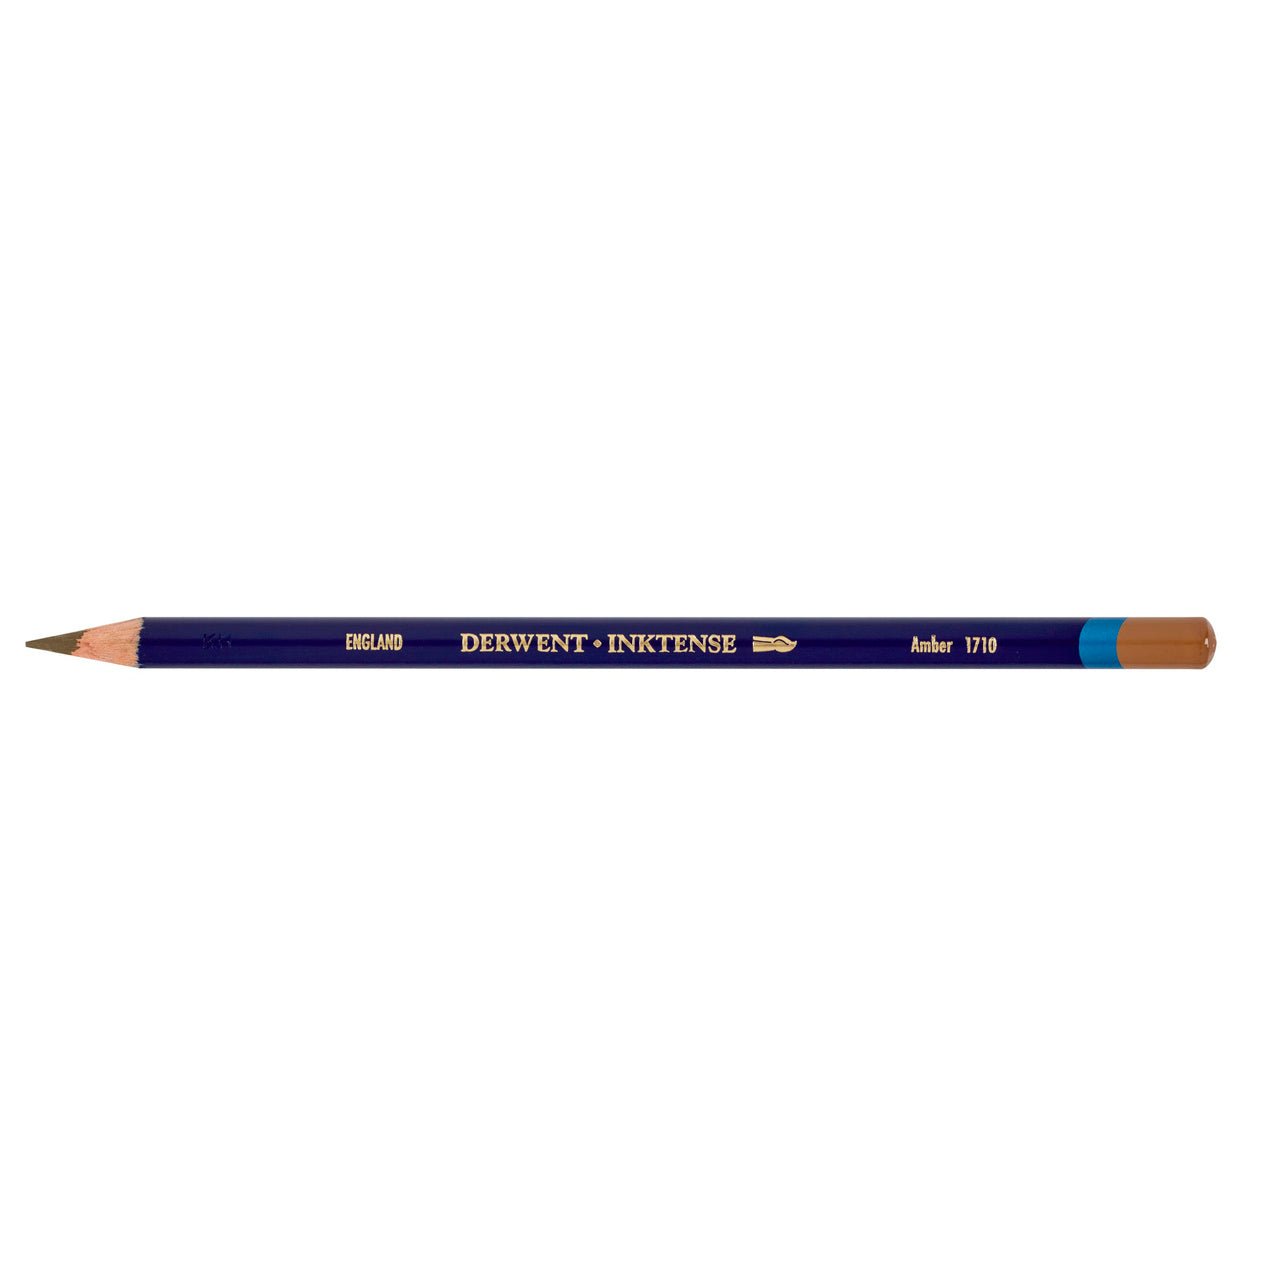 Derwent Inktense Pencil Amber - merriartist.com